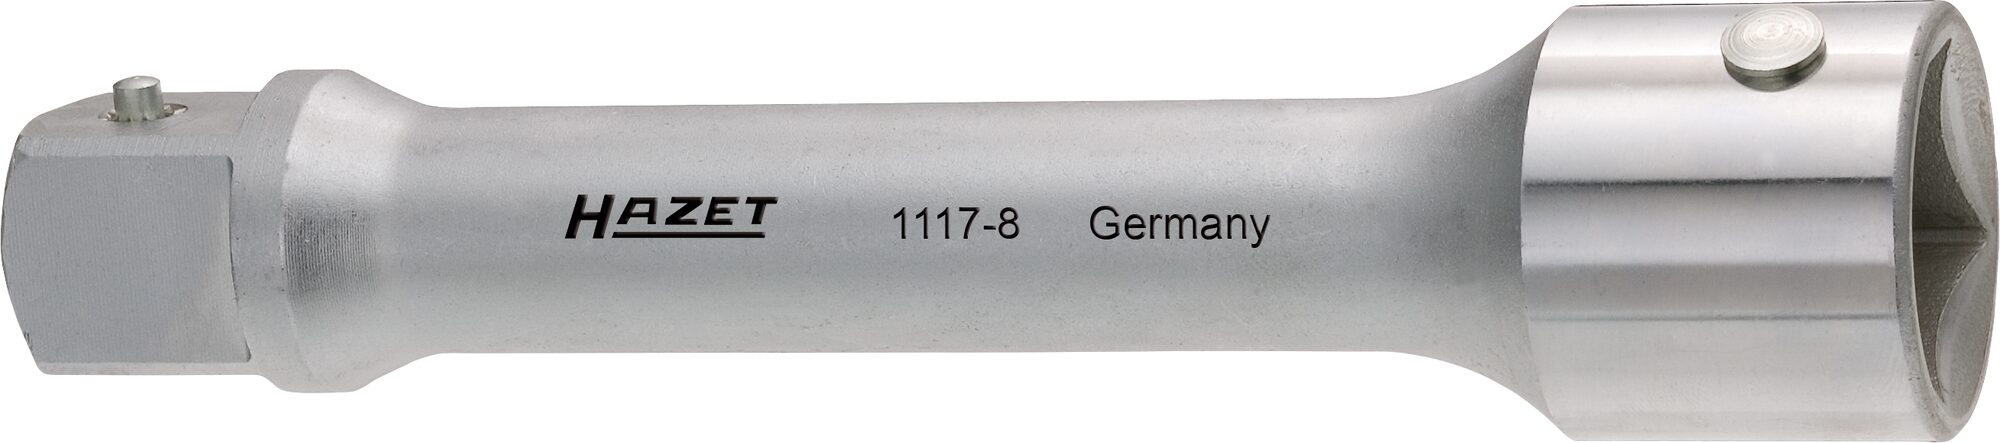 HAZET Verlängerung 1117-8 · Vierkant hohl 25 mm (1 Zoll) · Vierkant massiv 25 mm (1 Zoll)